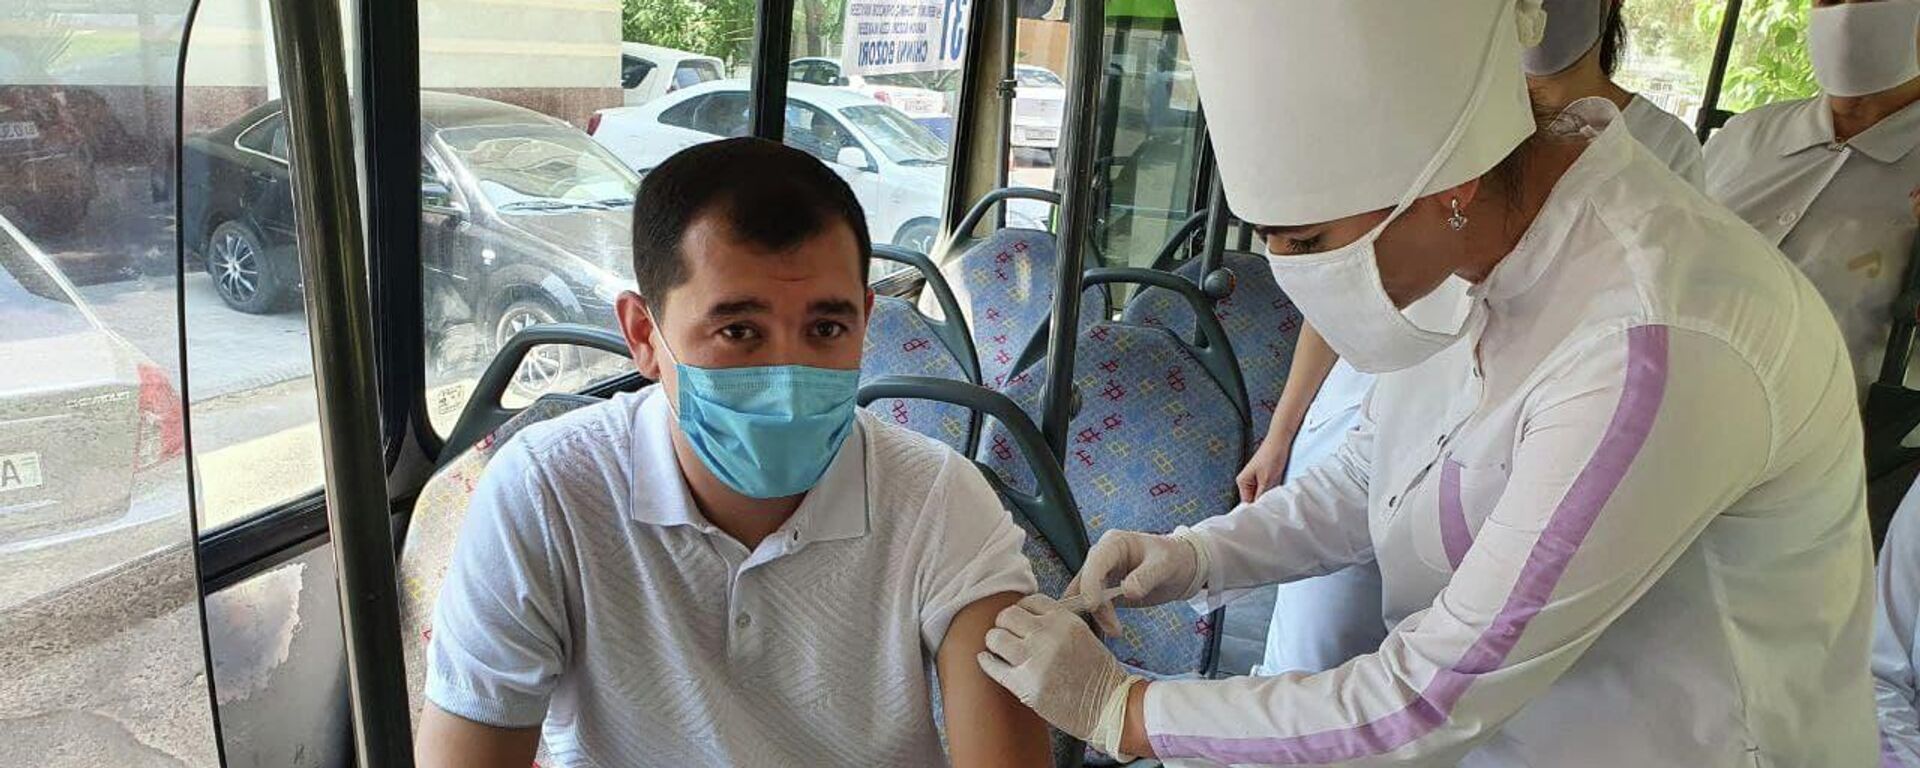 В Ташкенте начали вакцинацию в местах массового скопления людей - Sputnik Узбекистан, 1920, 08.07.2021